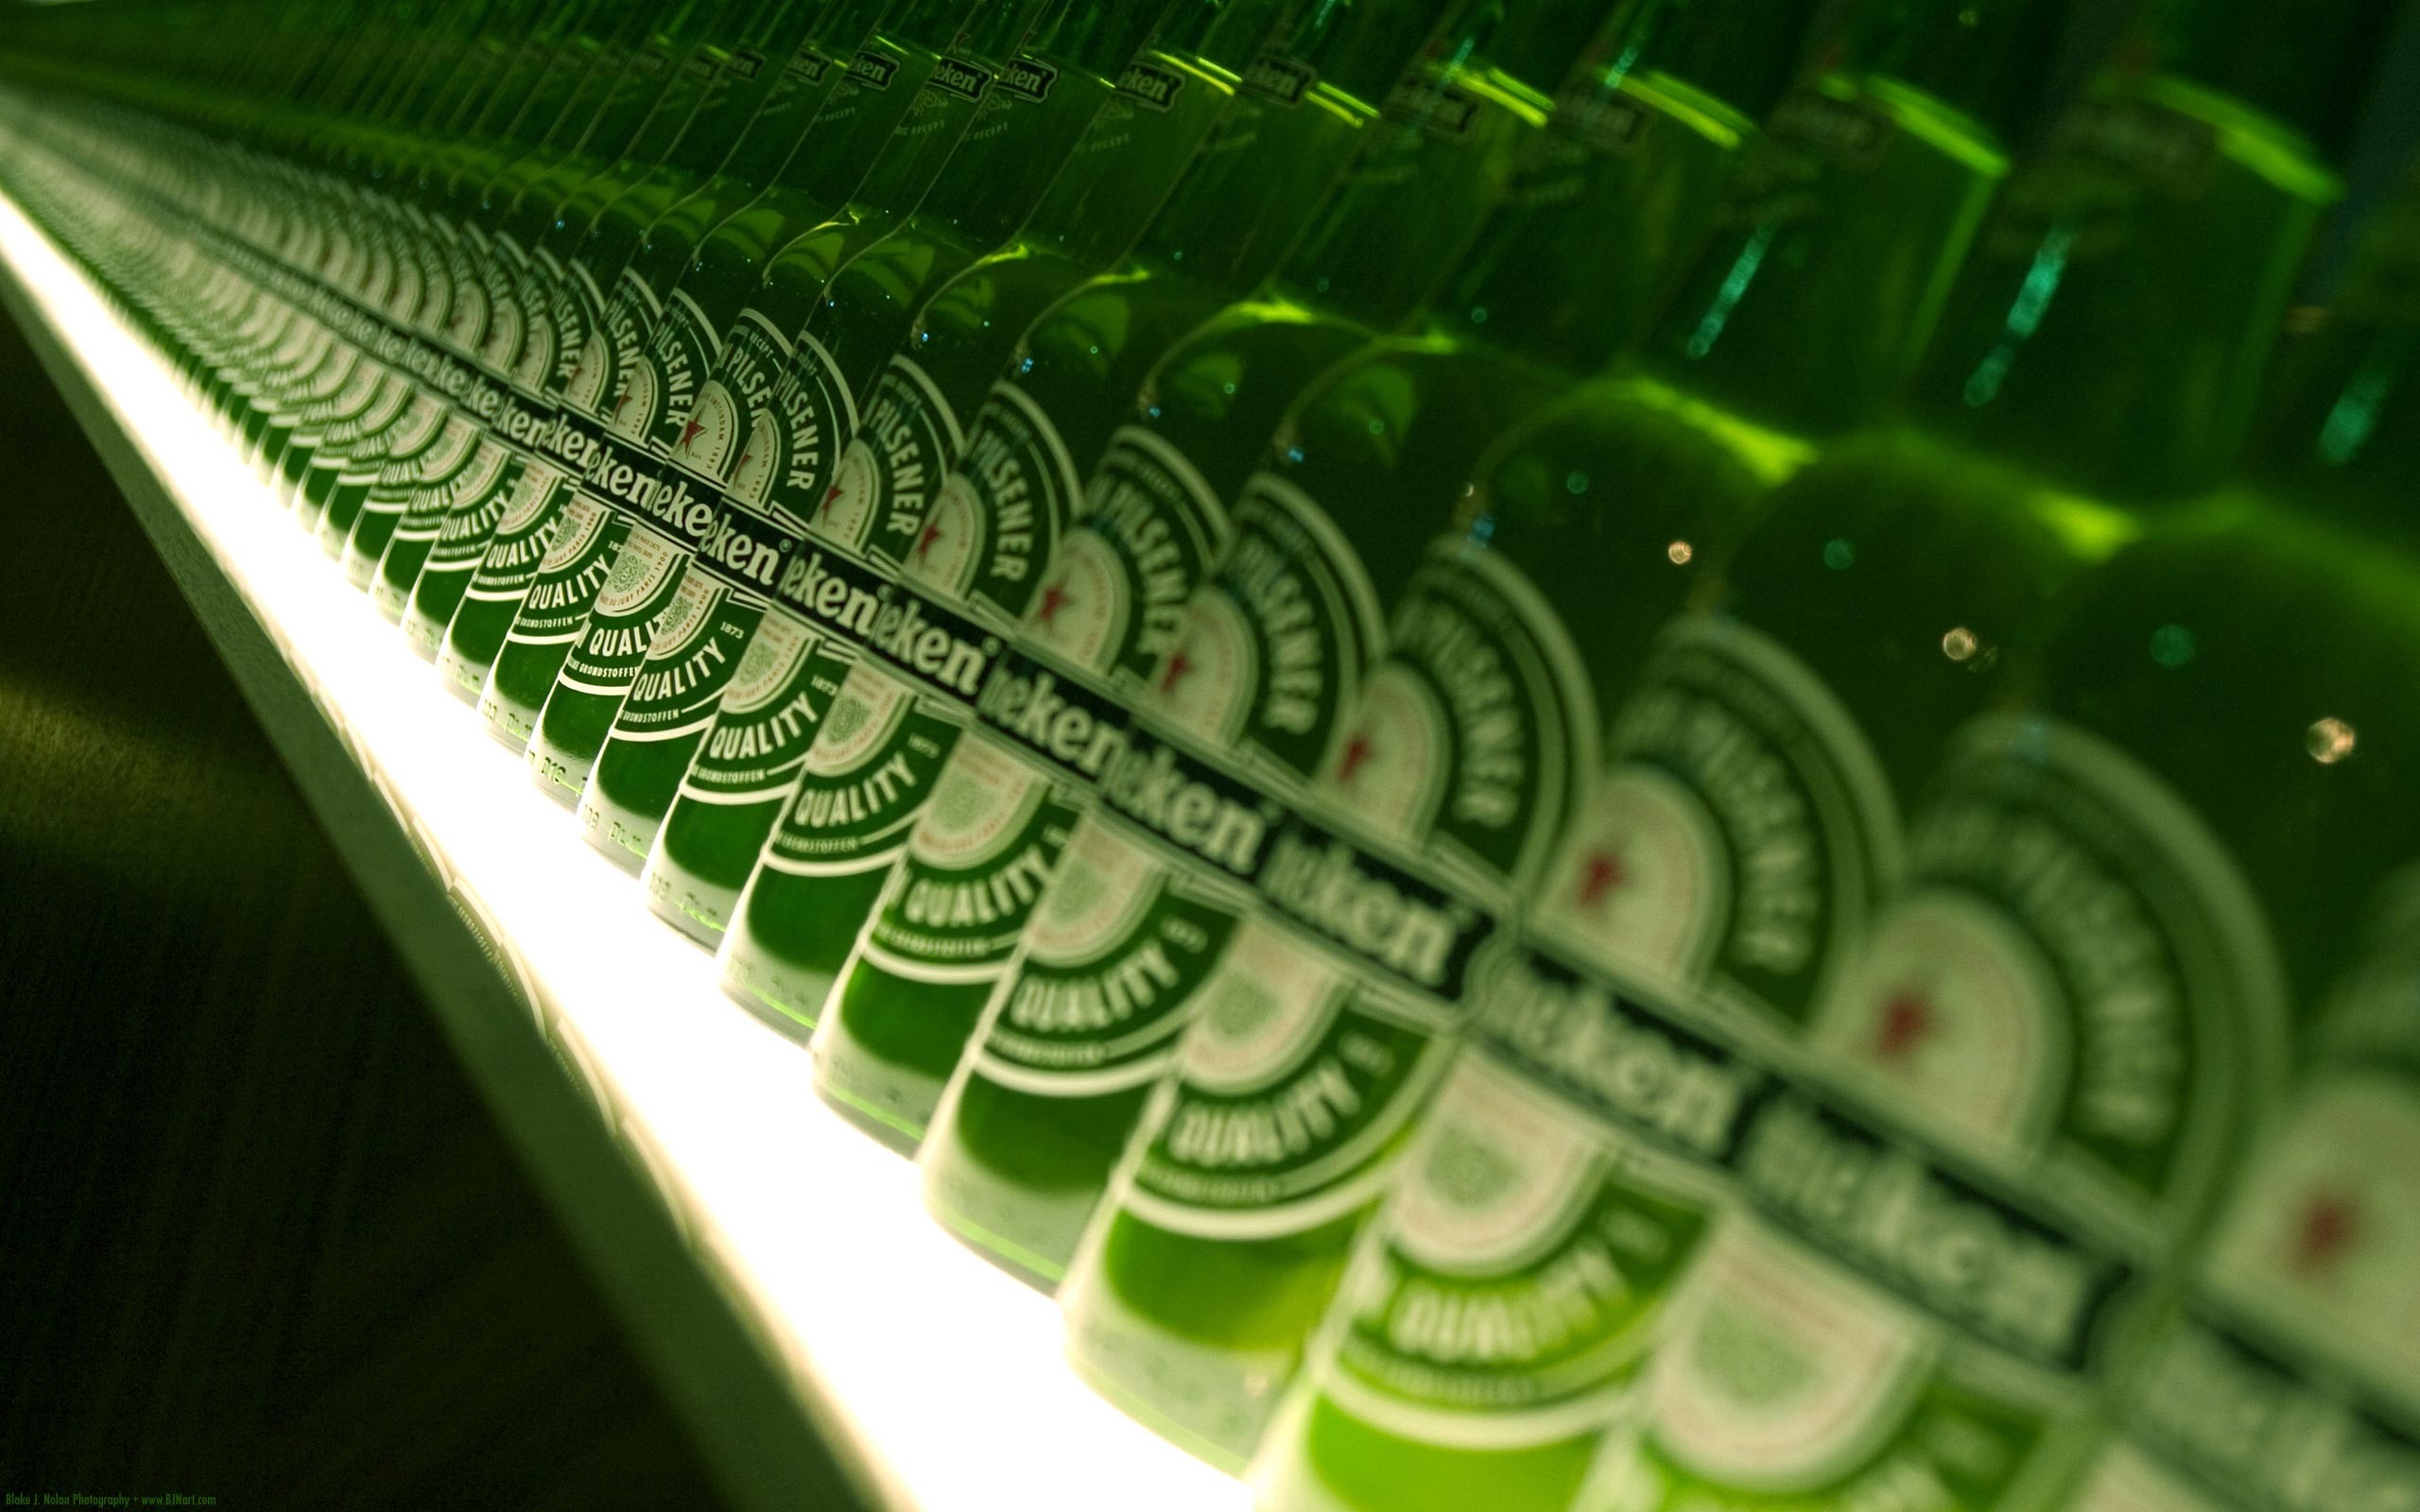 General 2560x1600 Heineken beer bottles in-line green beverages alcohol advertisements